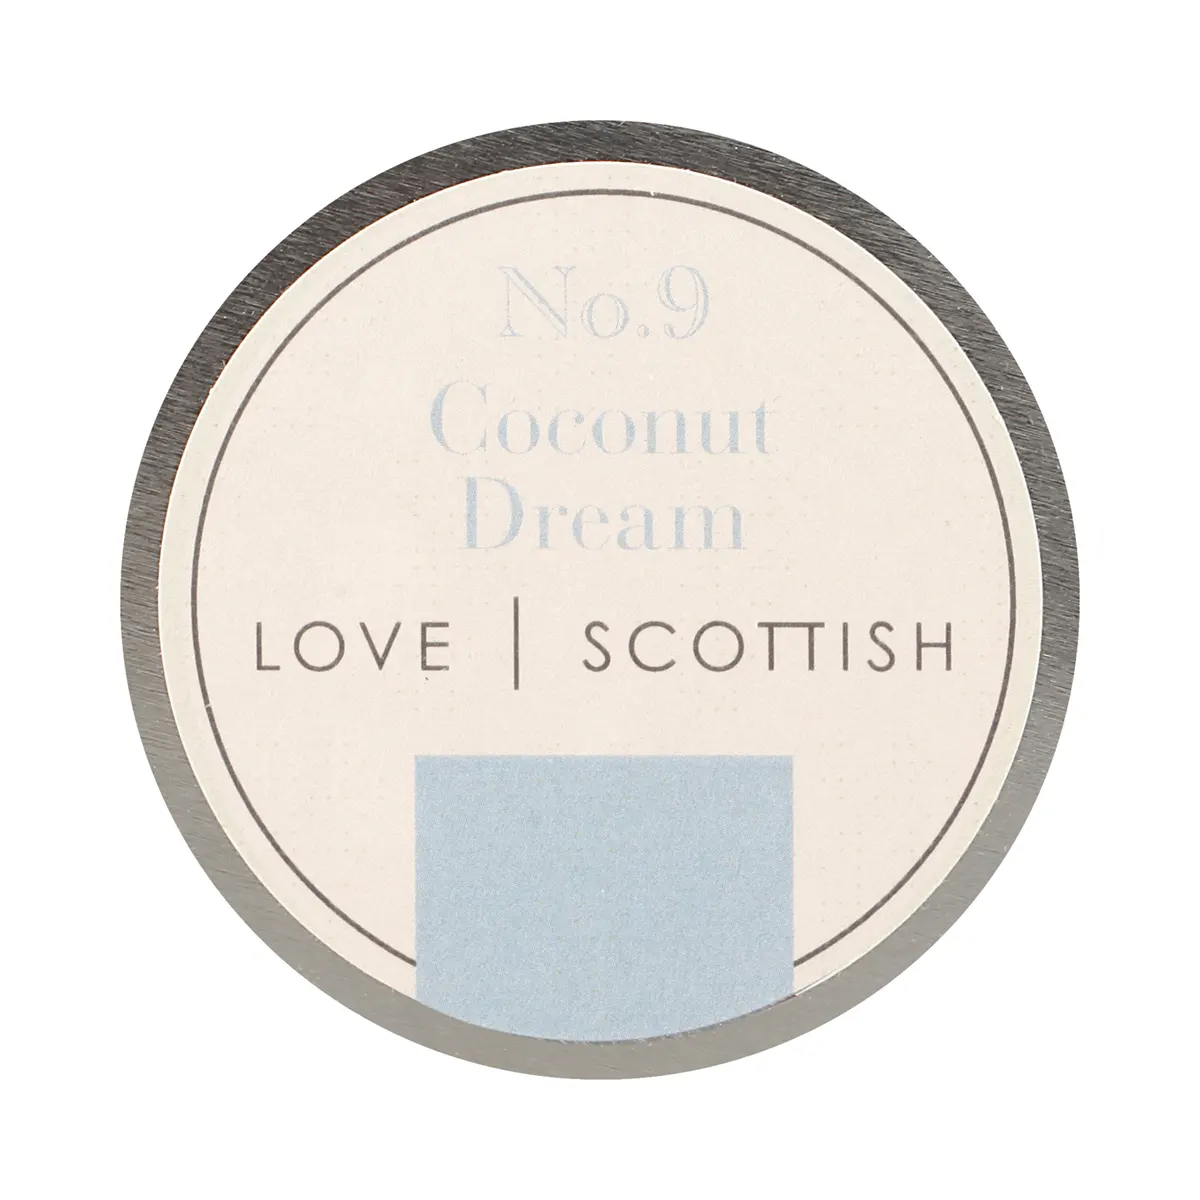 Love Scottish Travel Tin - Coconut Dream - handgefertigte Duftkerze aus Kokoswachs